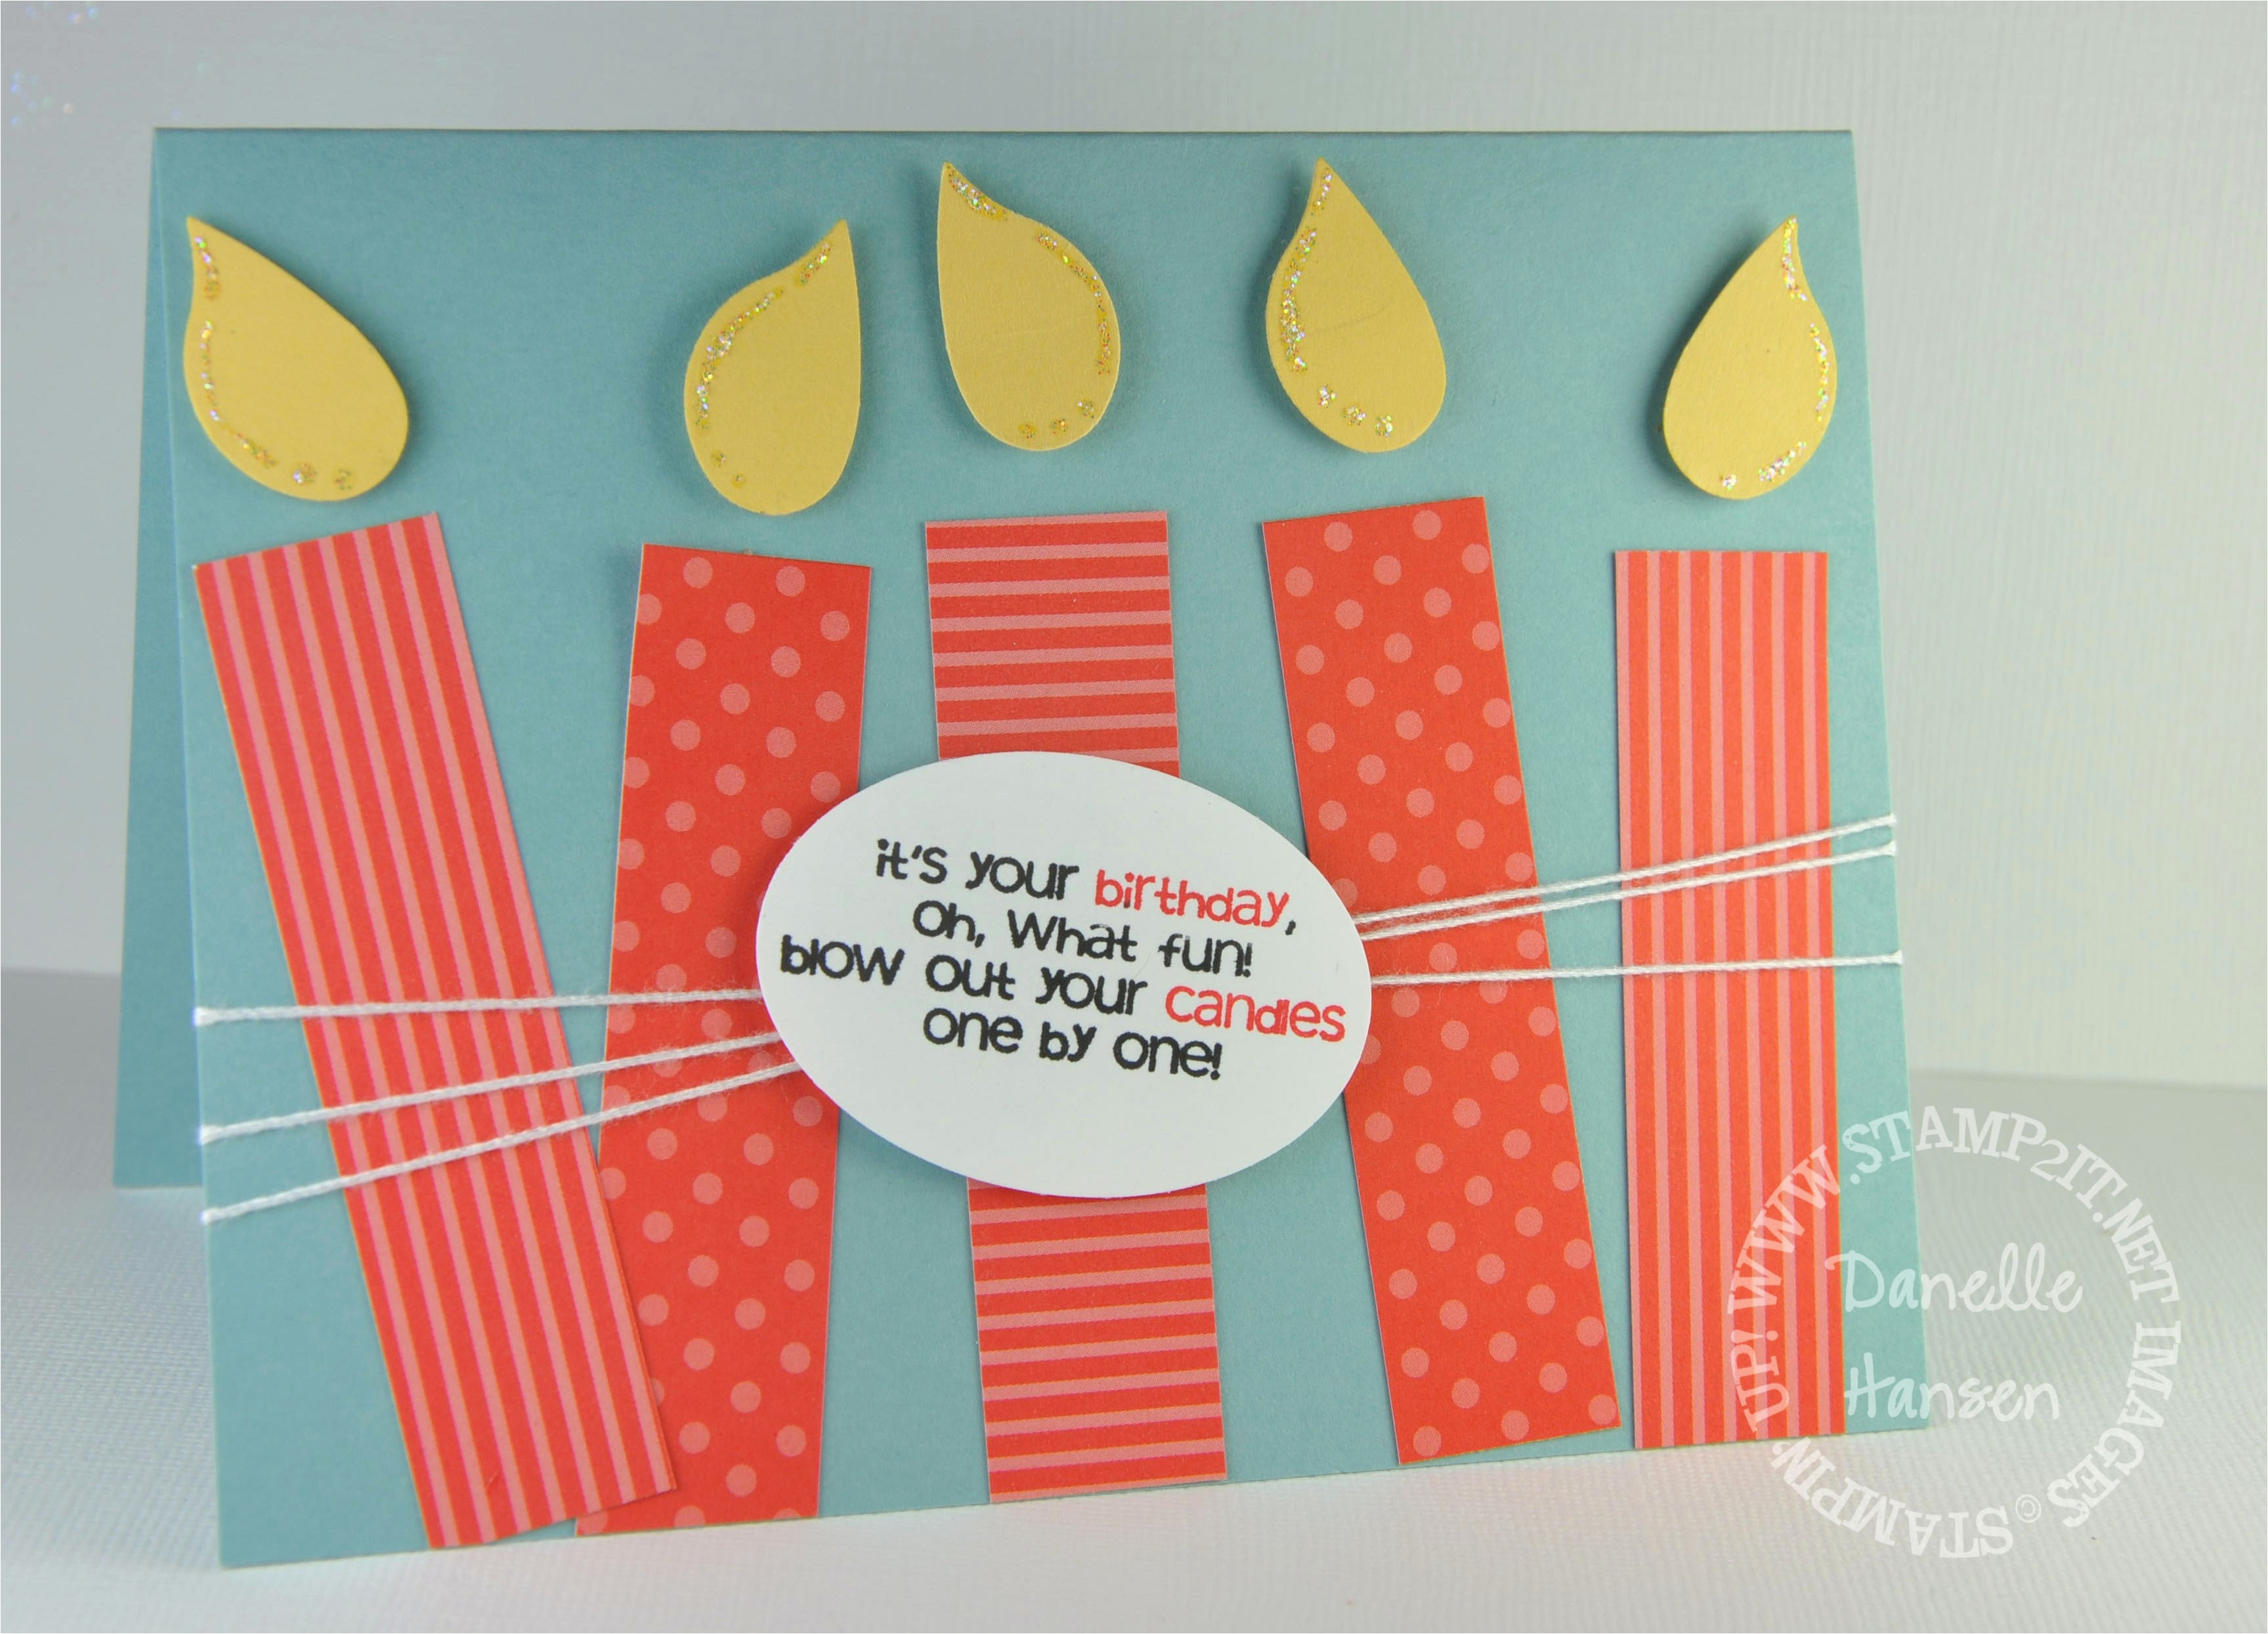 Handmade Birthday Card Ideas Diy Birthday Cards For Husband Creative Handmade Birthday Card Ideas